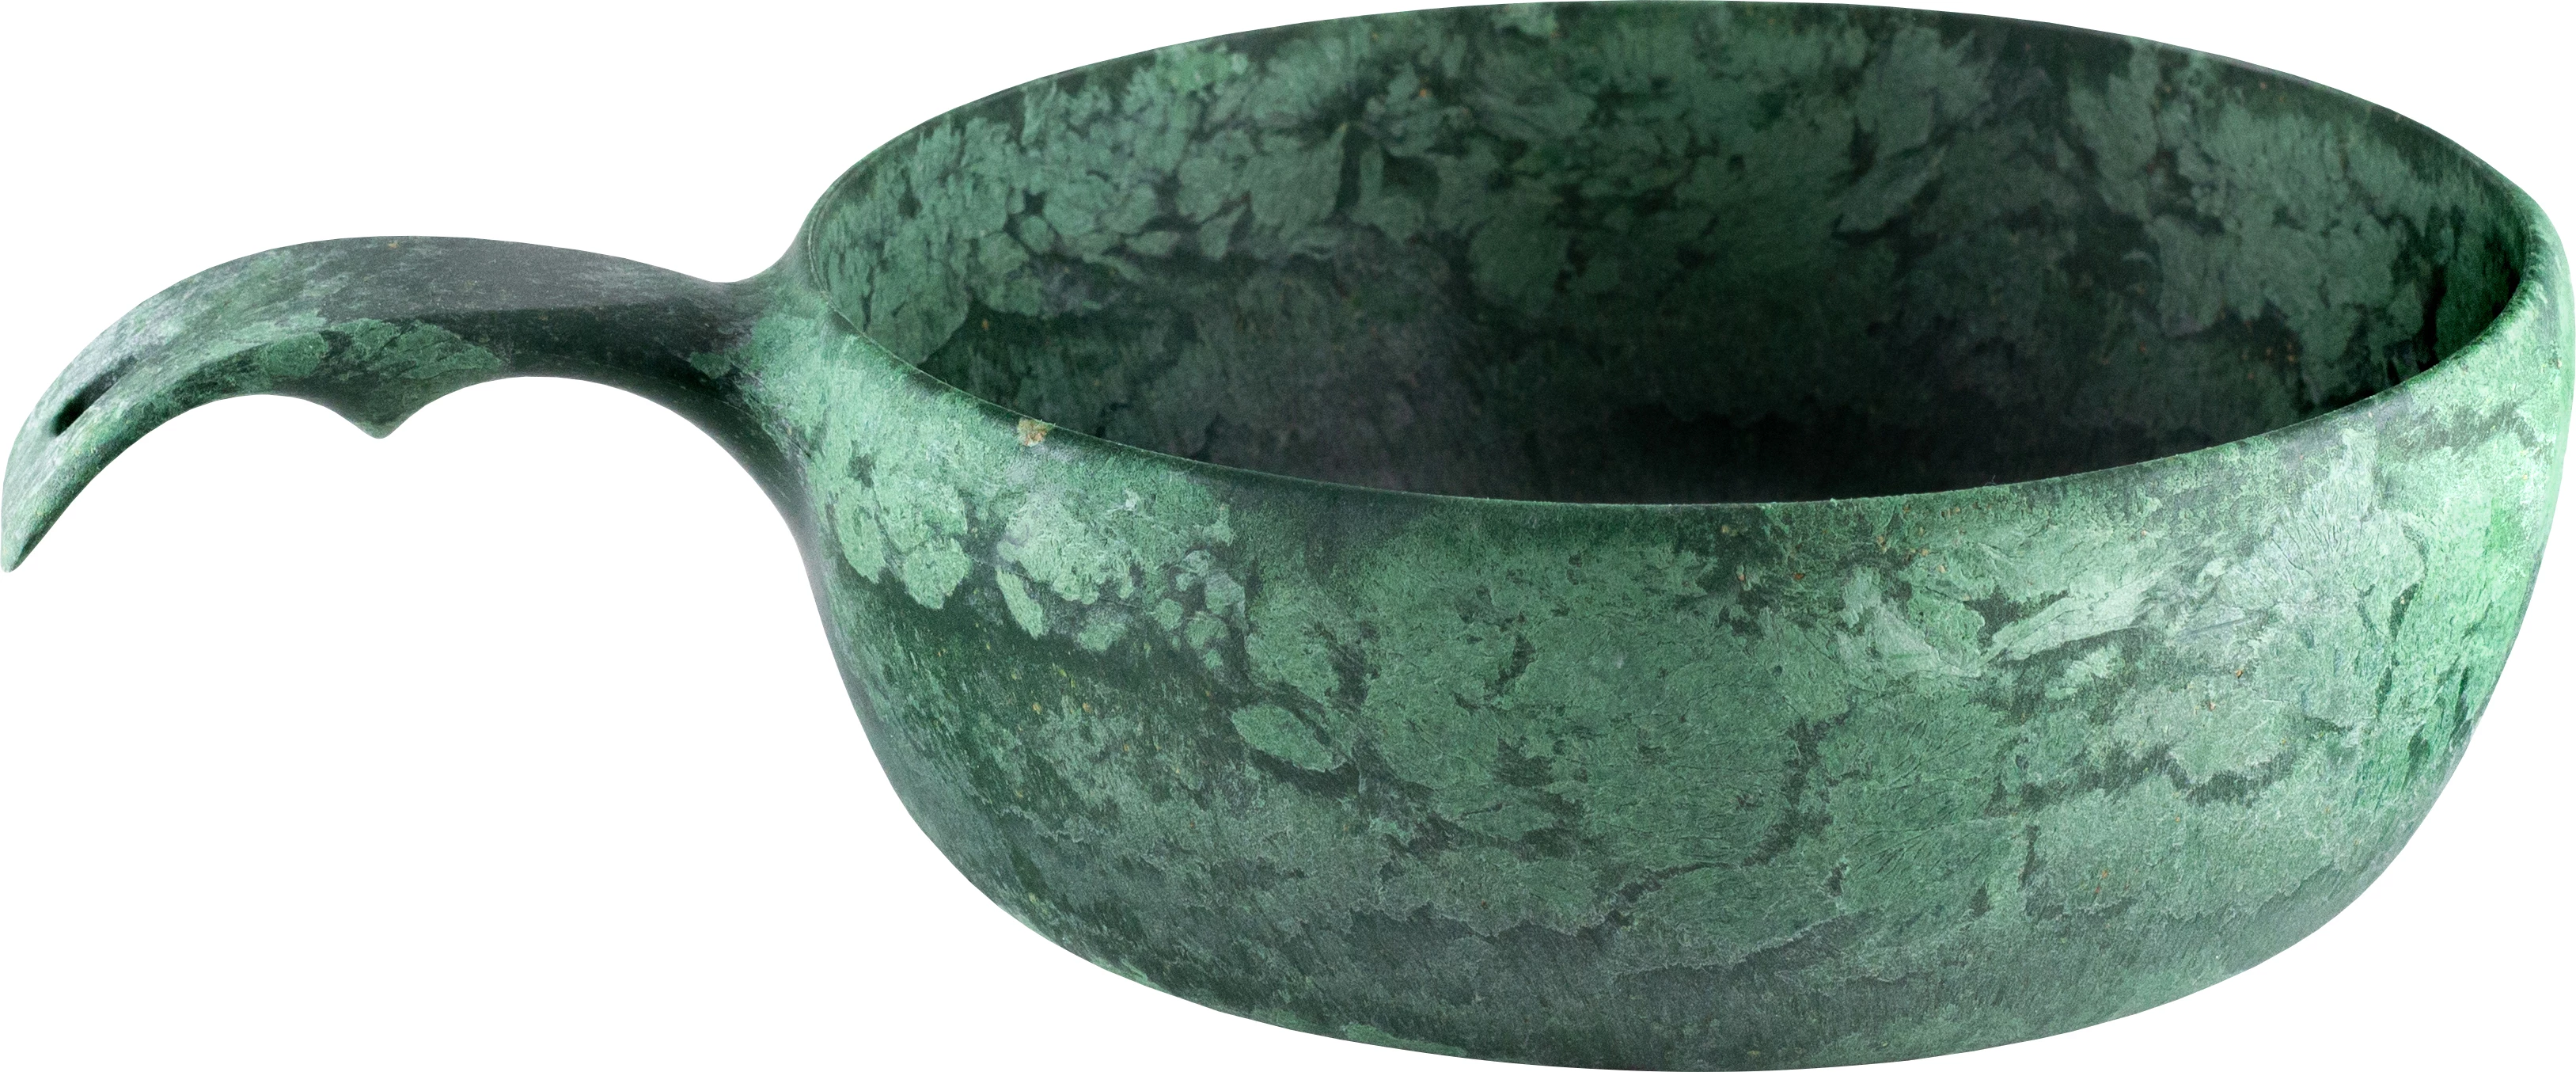 Kupilka skål med hank, grøn, 50 cl, ø 15,5 cm